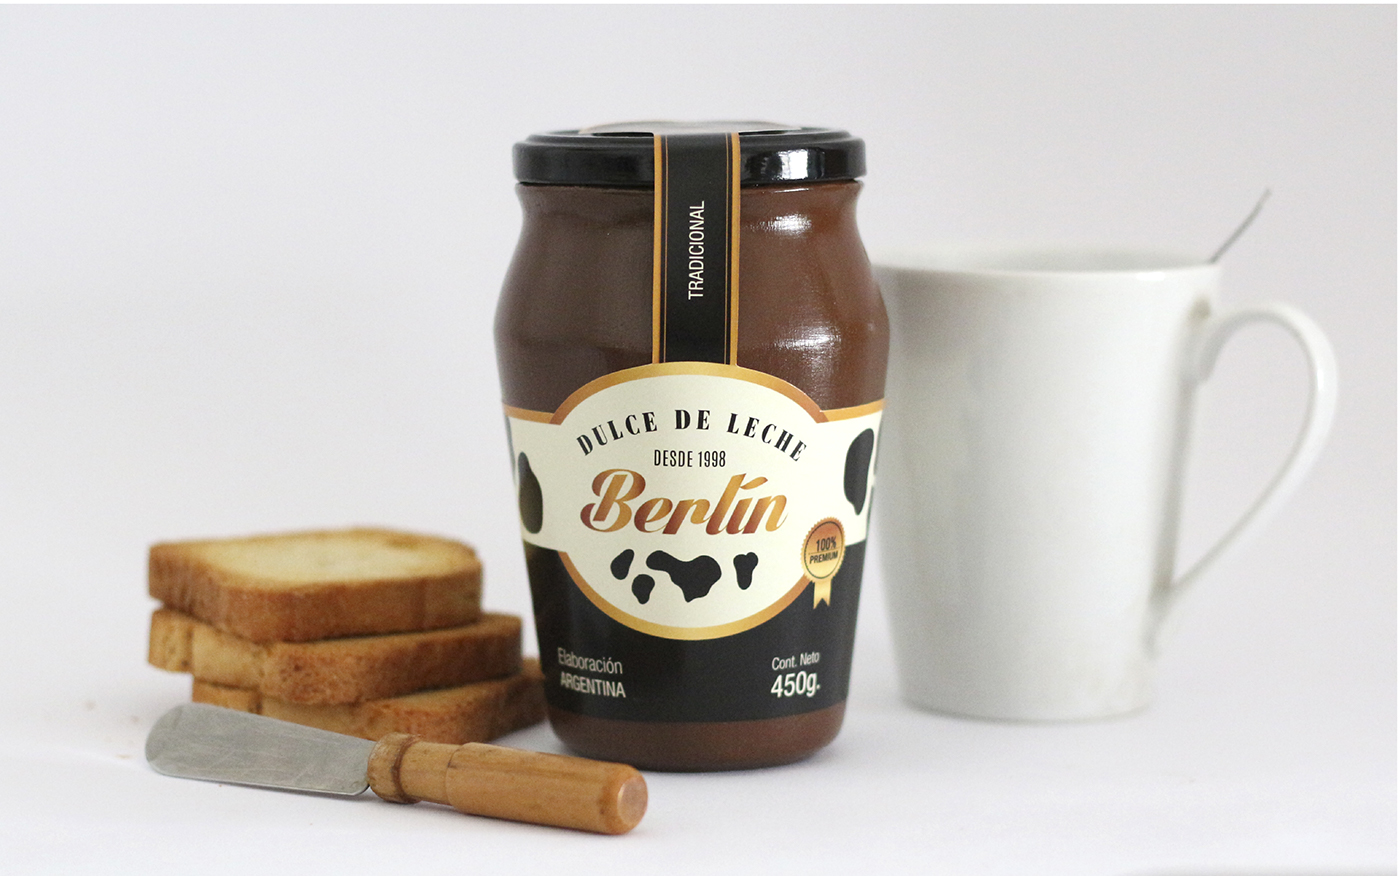 Packaging etiquetas dulce de leche marcas Label design graphic catedra bermudez envase